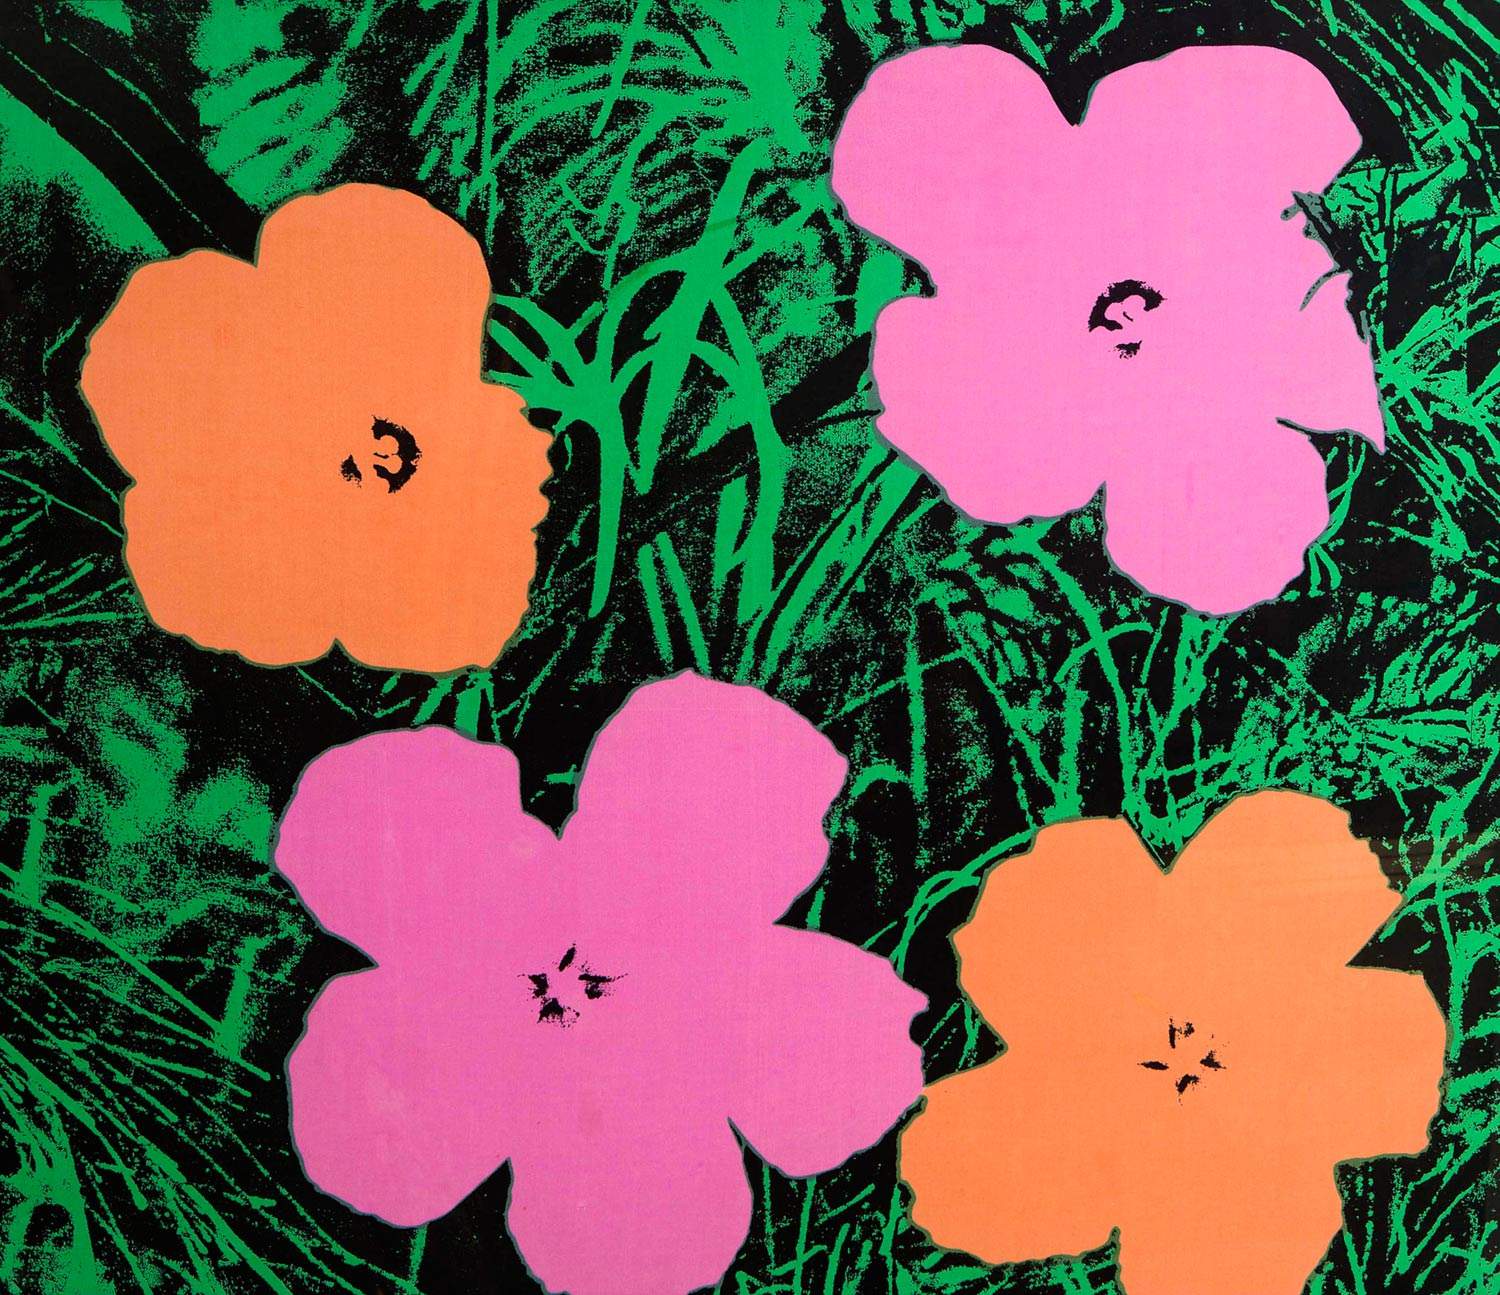 Milan, une grande exposition sur Andy Warhol à l'automne sous la direction de Bonito Oliva